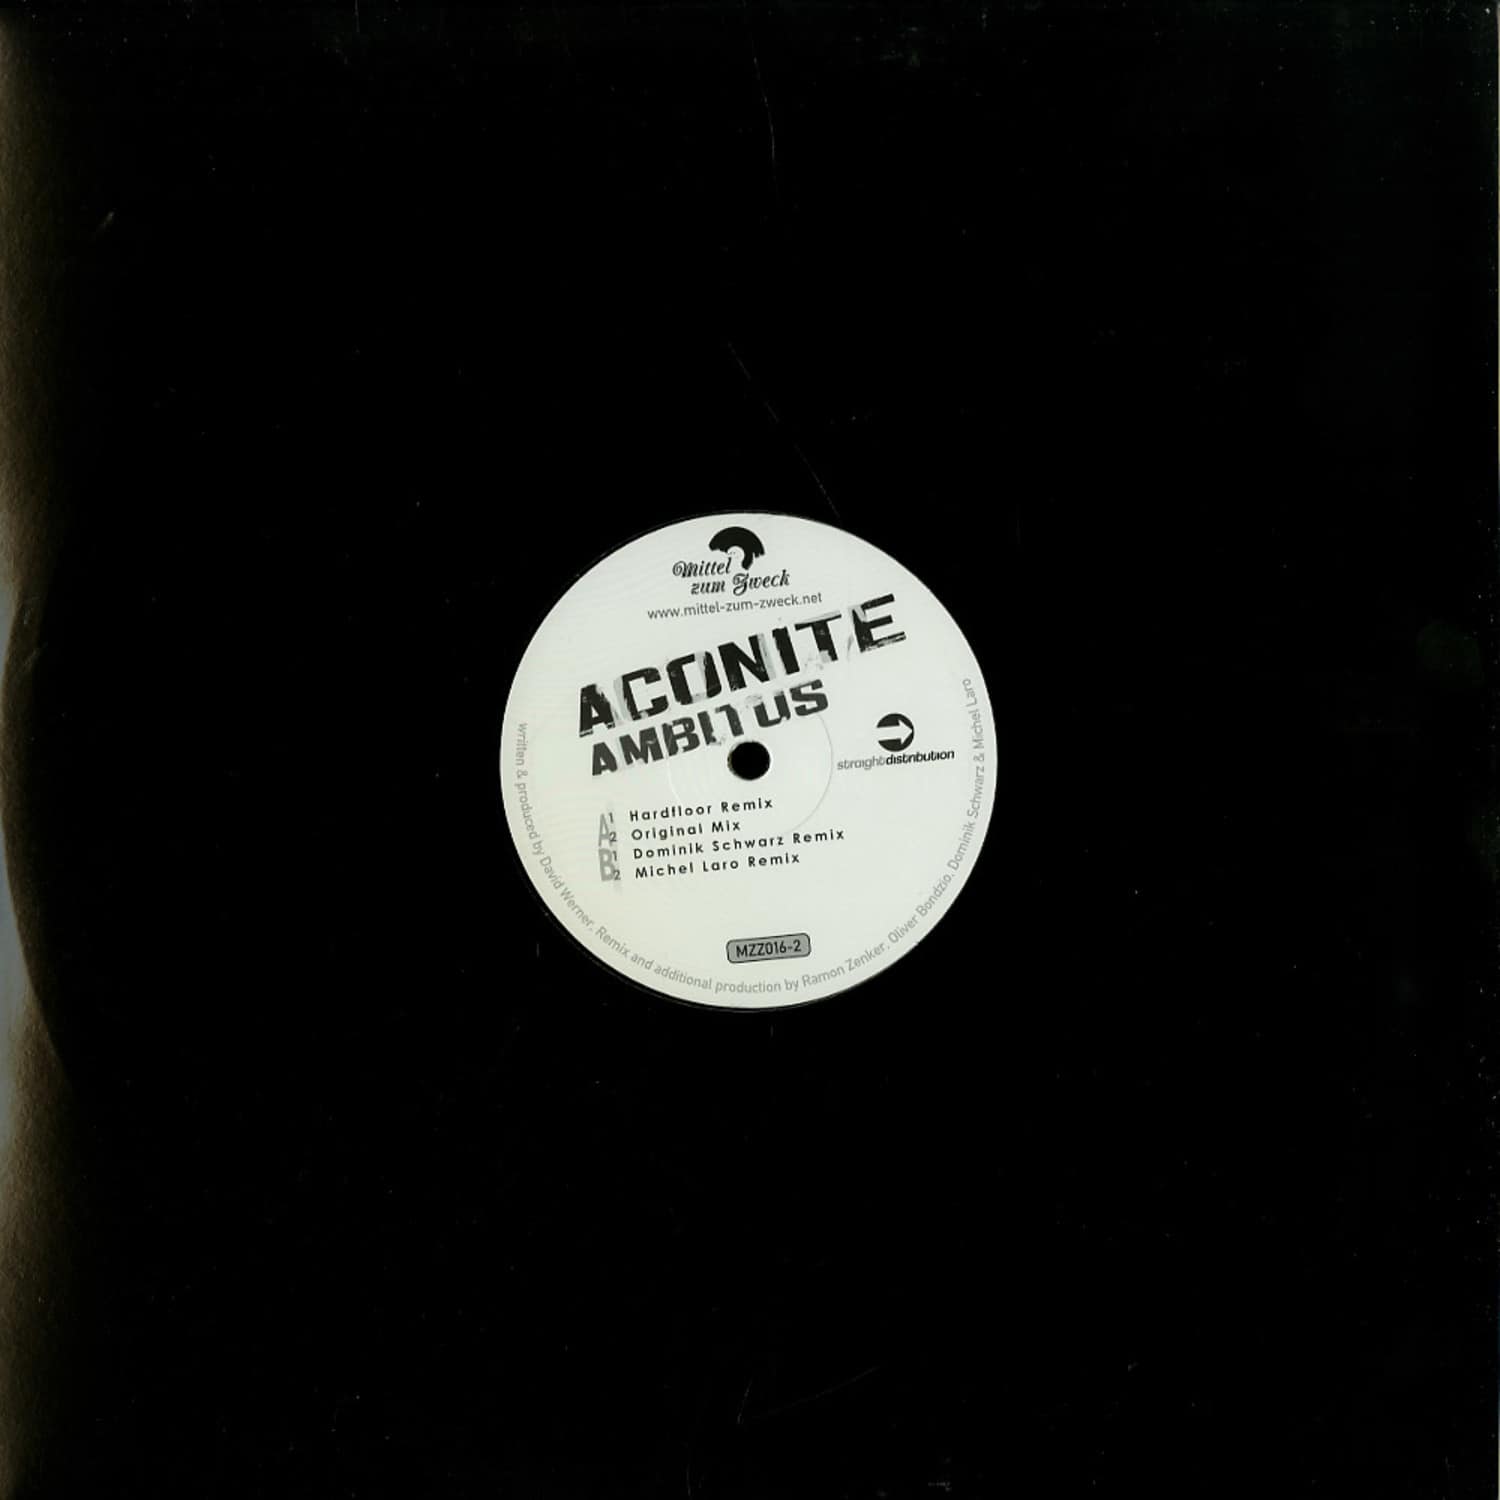 Aconite - AMBITUS 